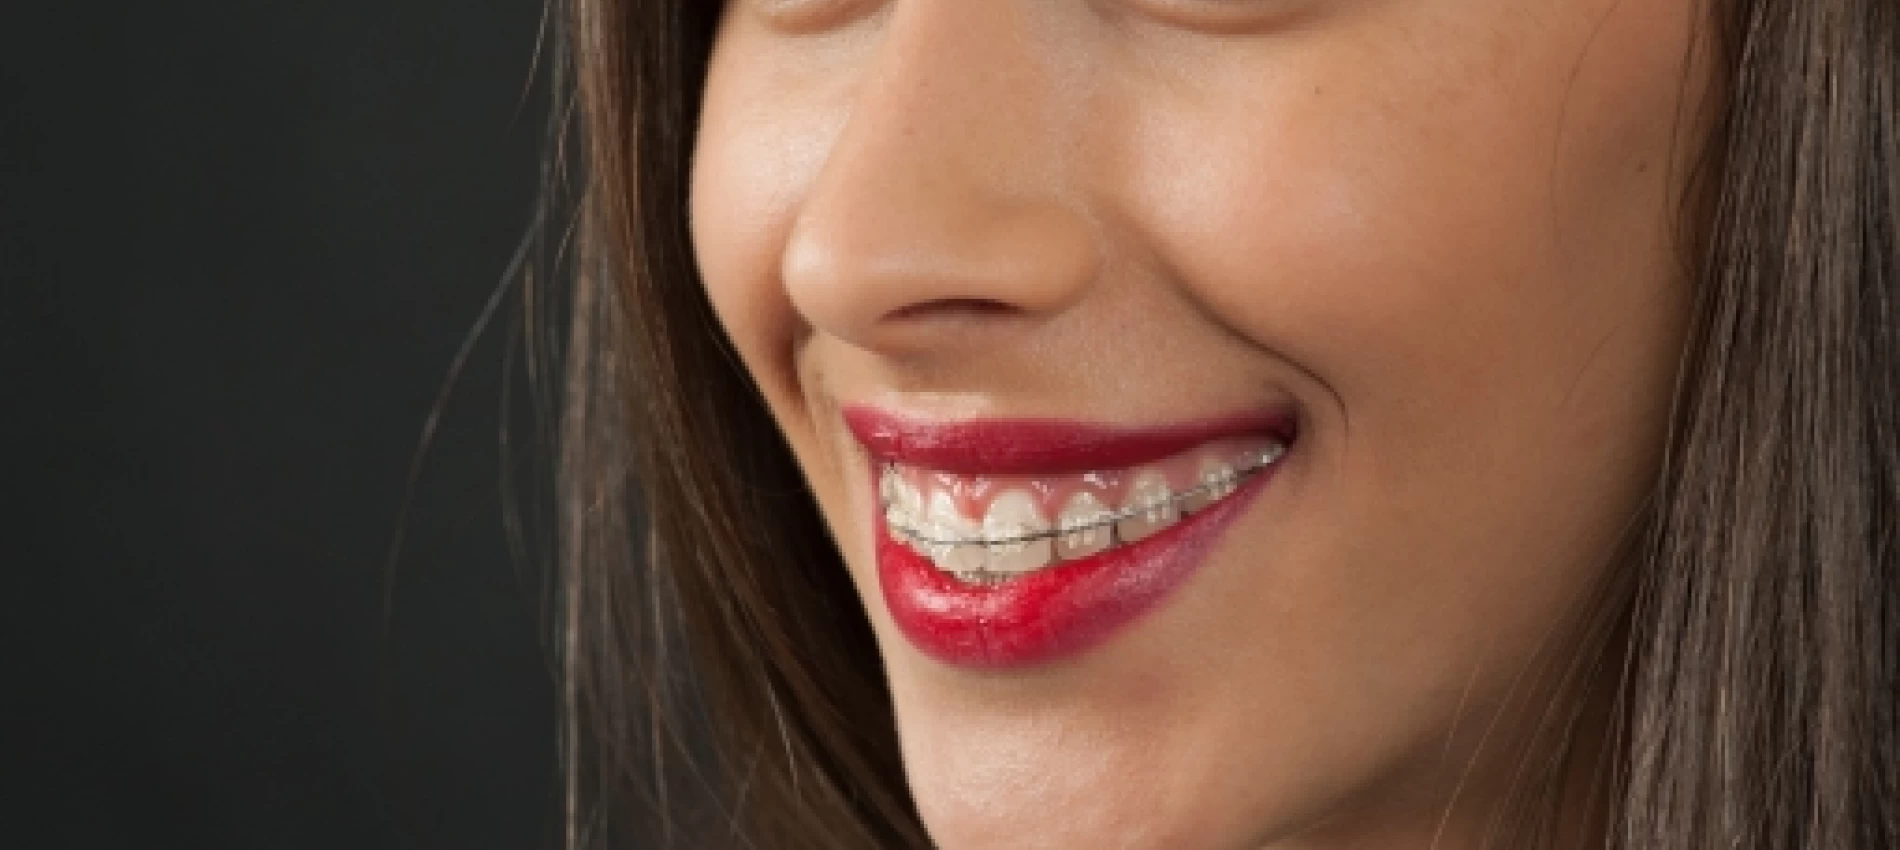 Cum se mentin rezultatele unui tratament ortodontic?